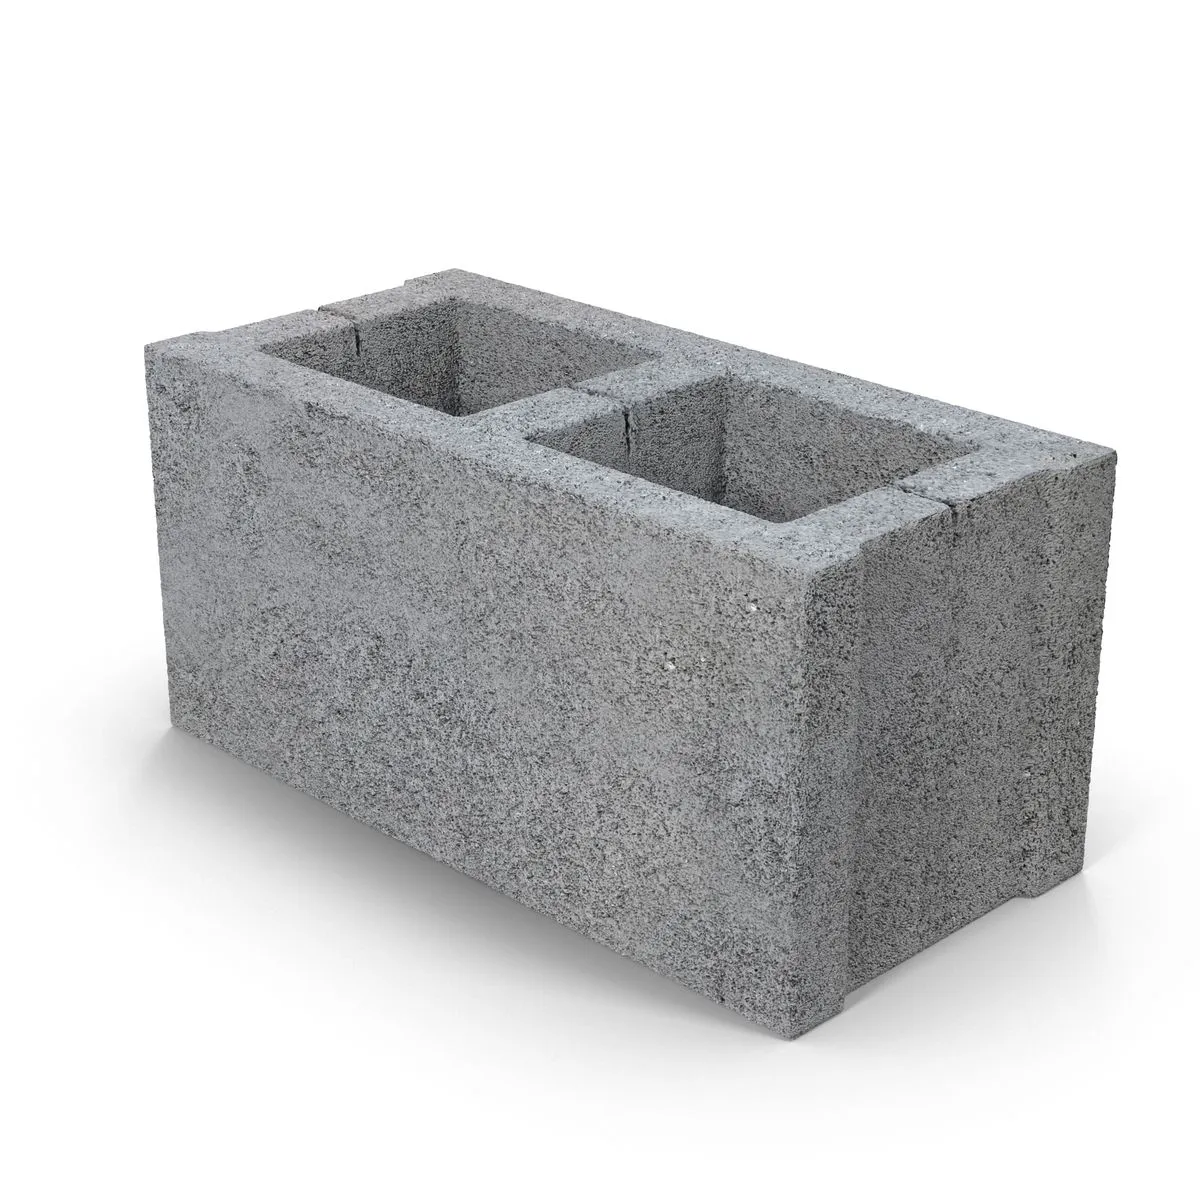 Блок бетонный 20 20 40. Блок бетонный пустотелый 190х190х390 мм. Шлакоблок 90х190х390. Блок пескоцементный пустотелый. Блоки керамзитобетонные 390х190х190.